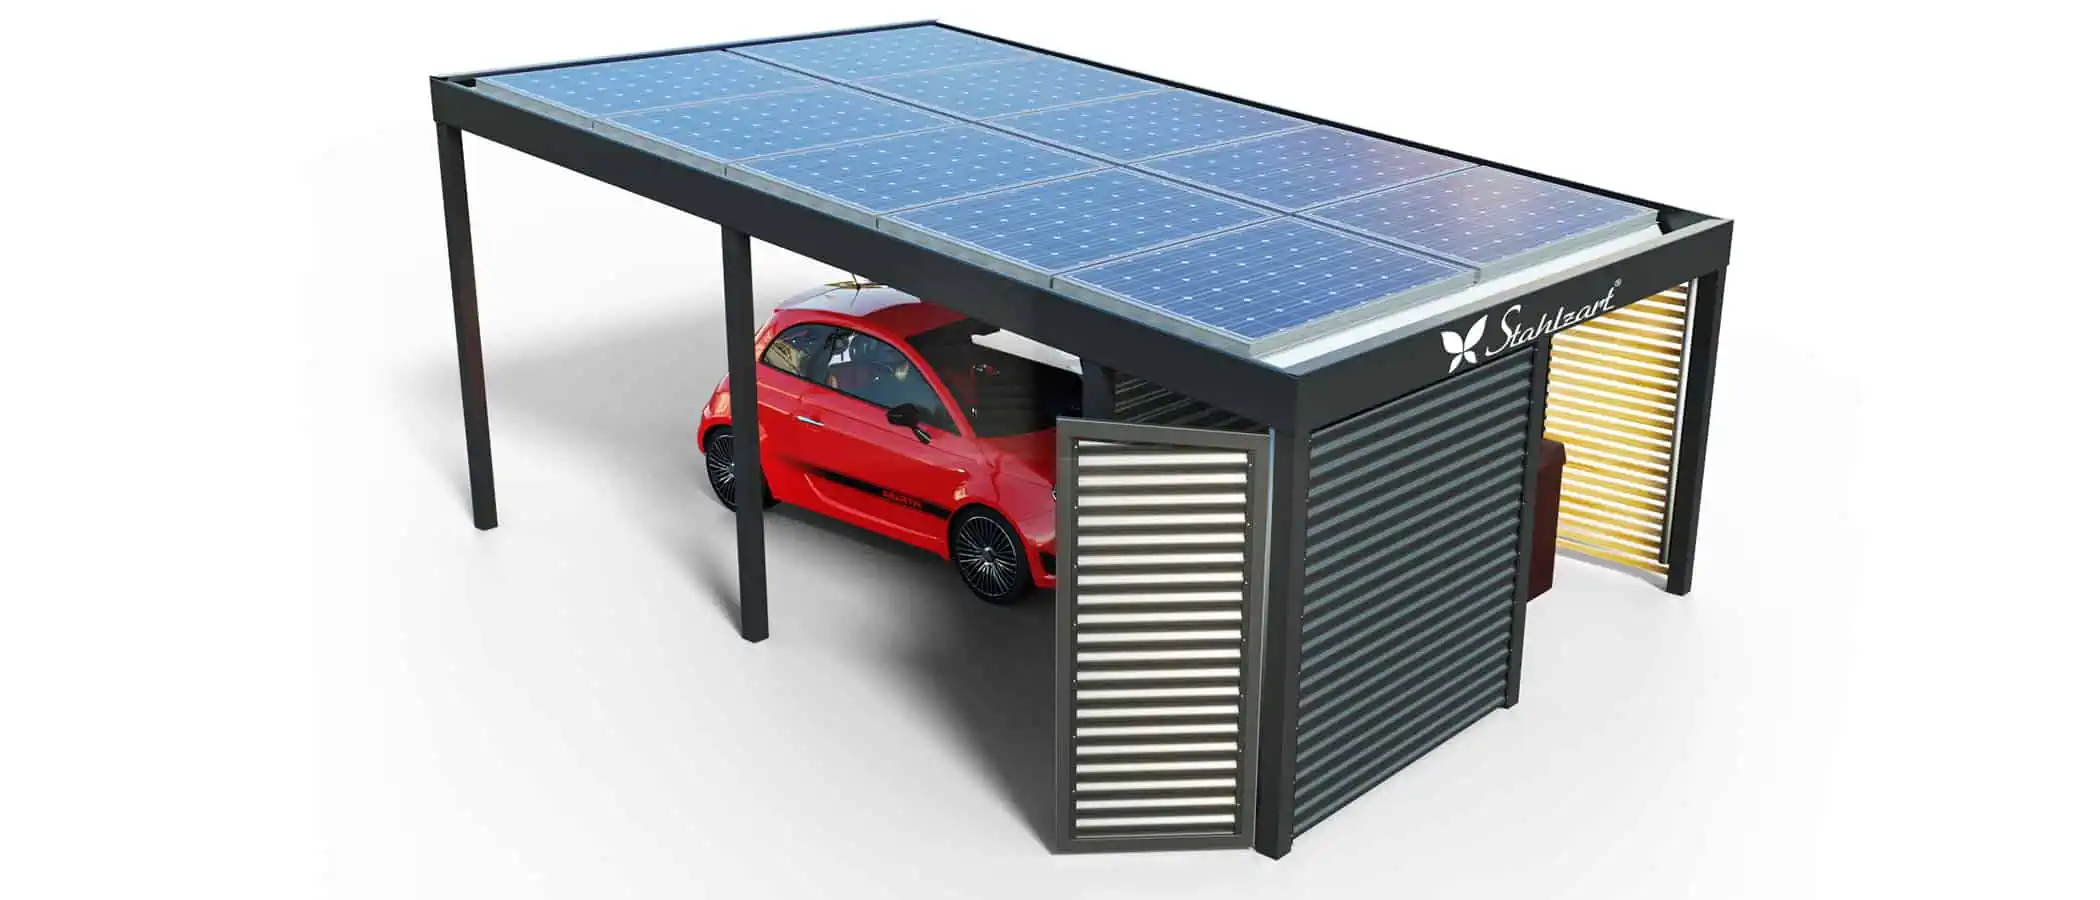 solar-carport-mit-pultdach-carports-solarcarport-pultdach-carportdach-design-strom-angebot-photovoltaikanlage-module-solardach-dachflaeche-holz-metall-stahl-mit-schuppen-tuer-design-stahlzart